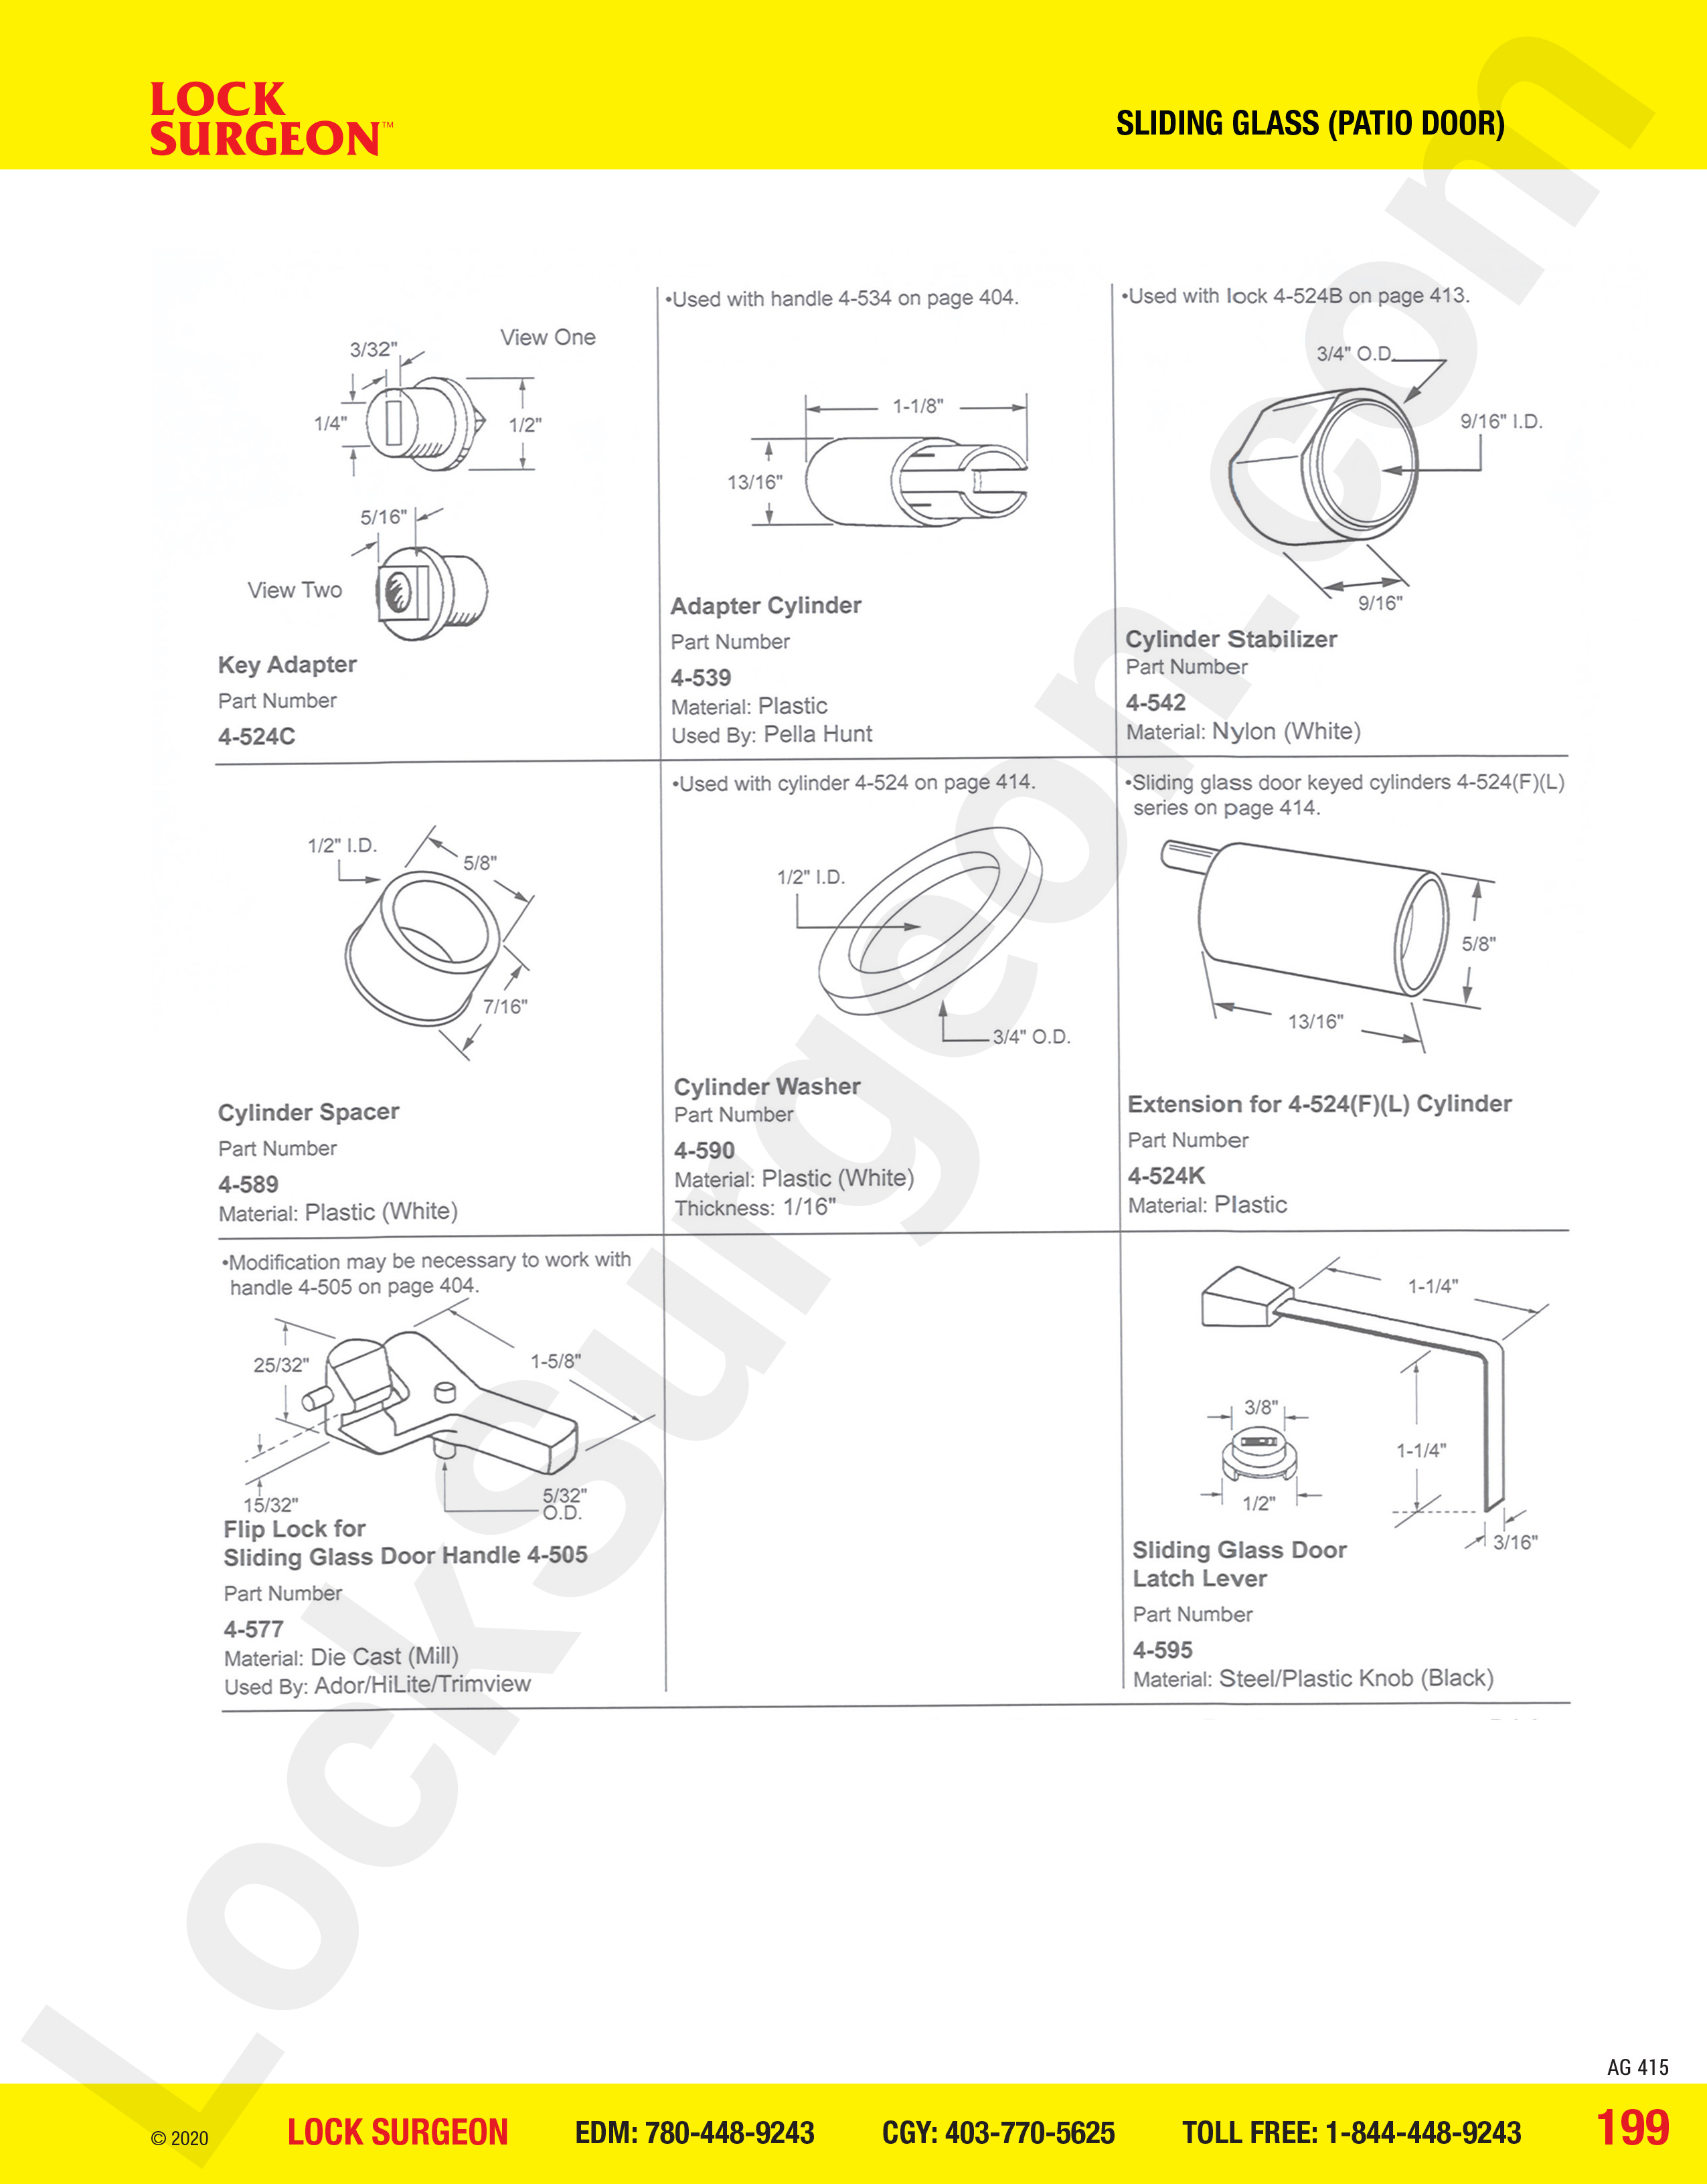 key adapter adapter cylinder cylinder stabilizer cylinder spacer cylinder washer extension for 4-524